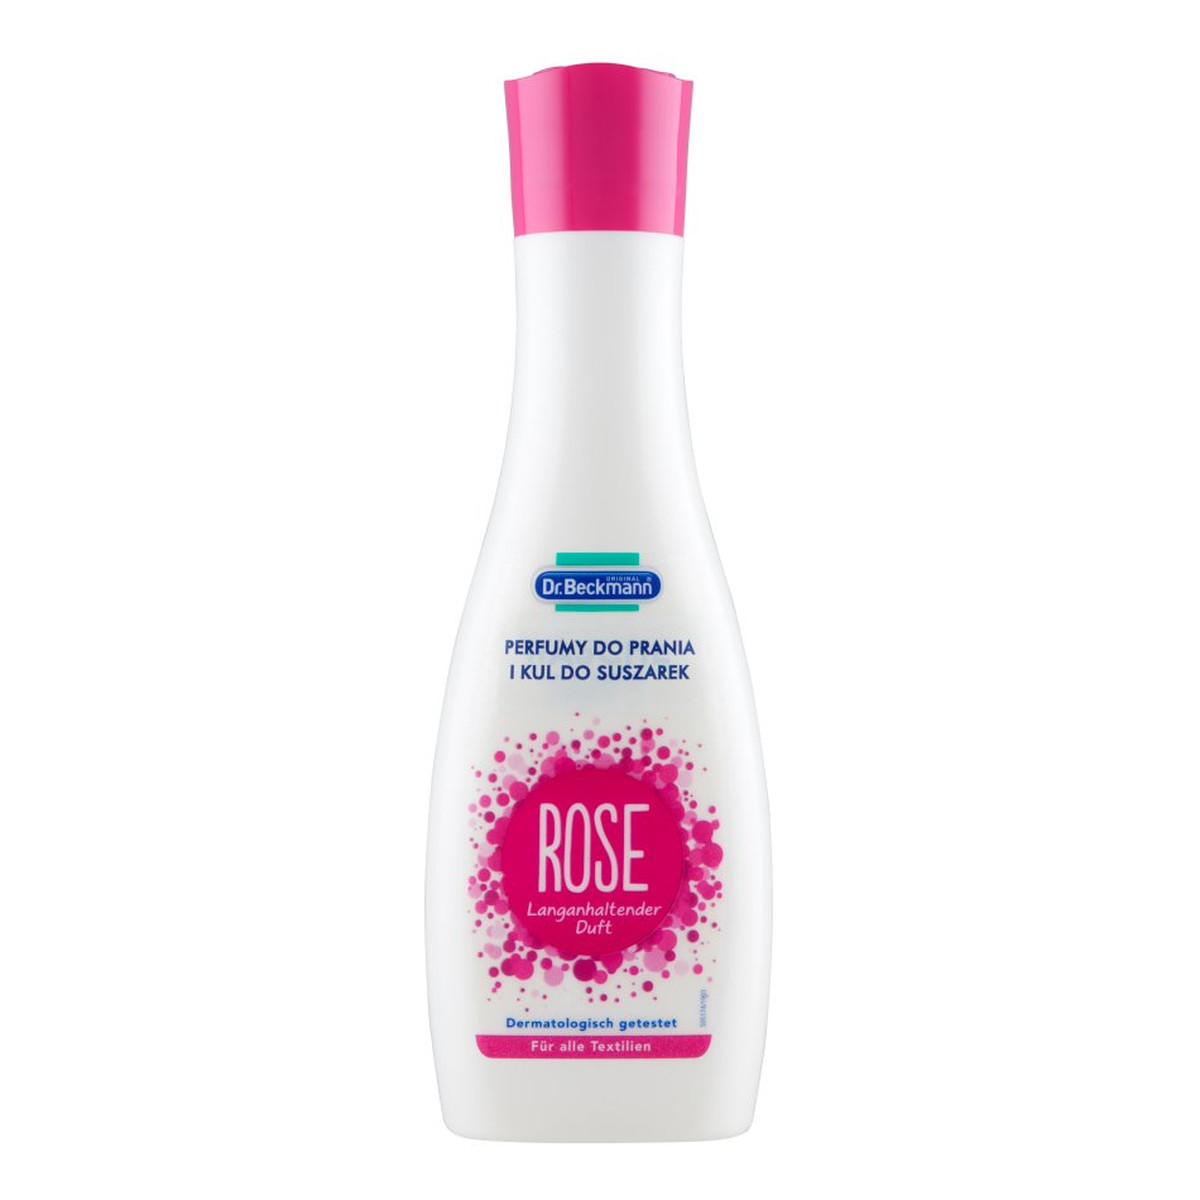 Dr Beckmann Perfumy do prania i kul suszarek Rose 250ml